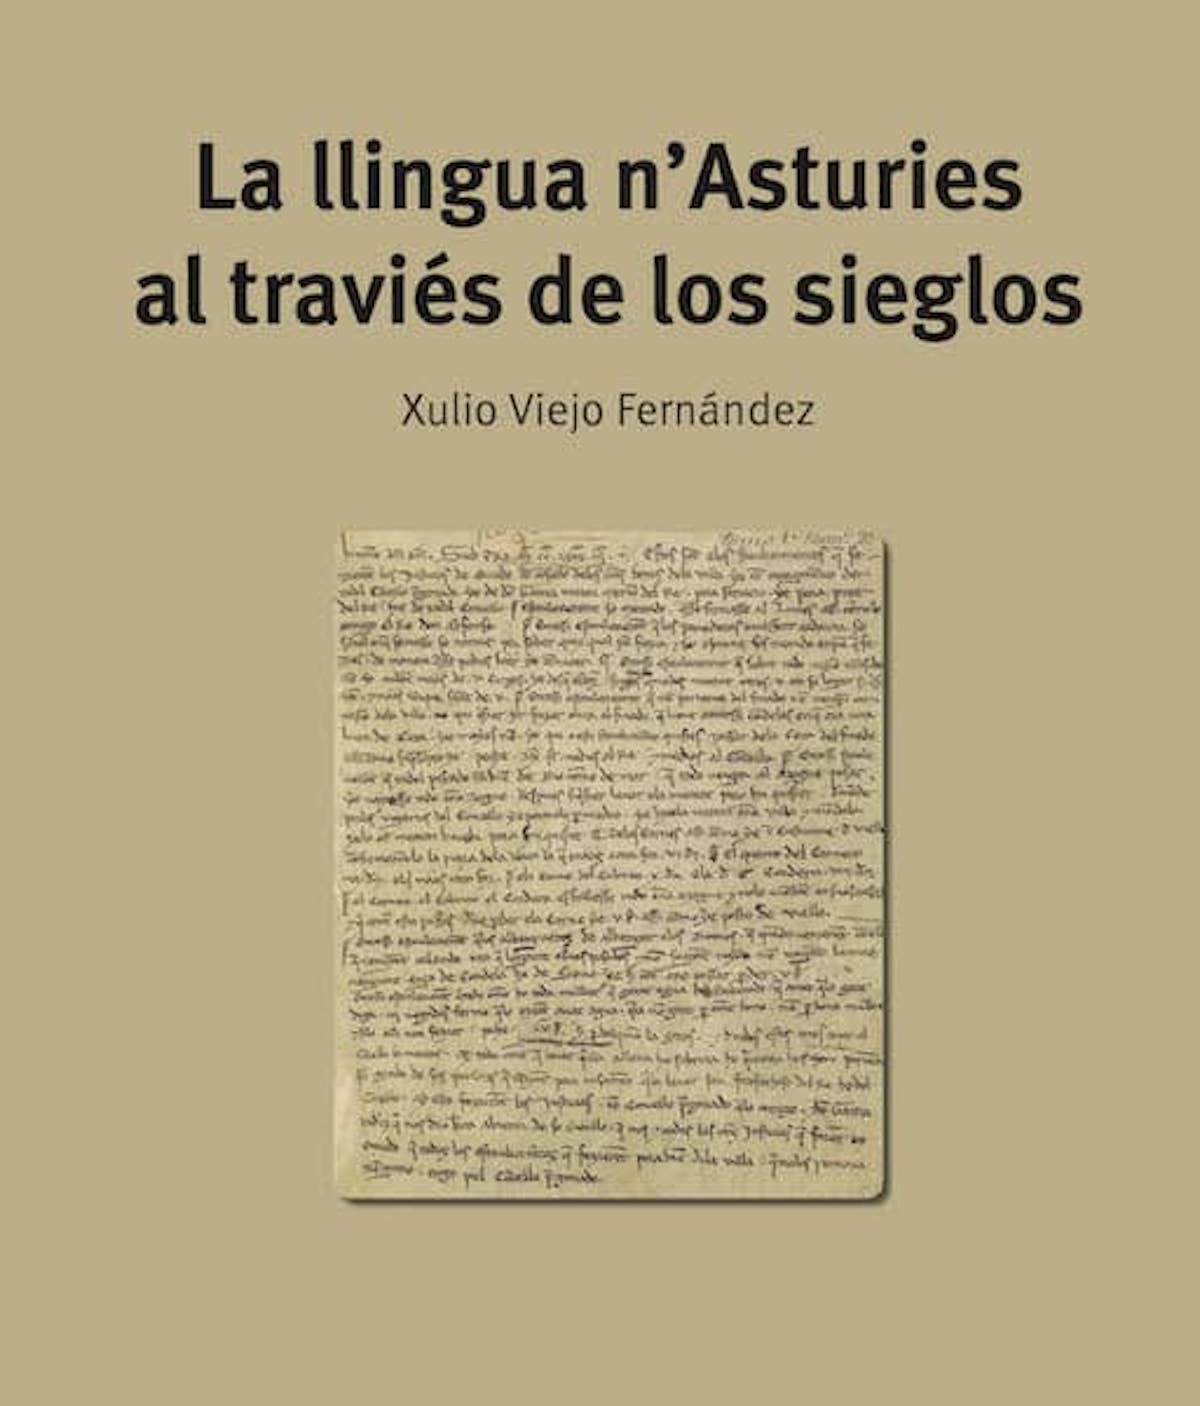 La llingua n'Asturies al traviés de los sieglos